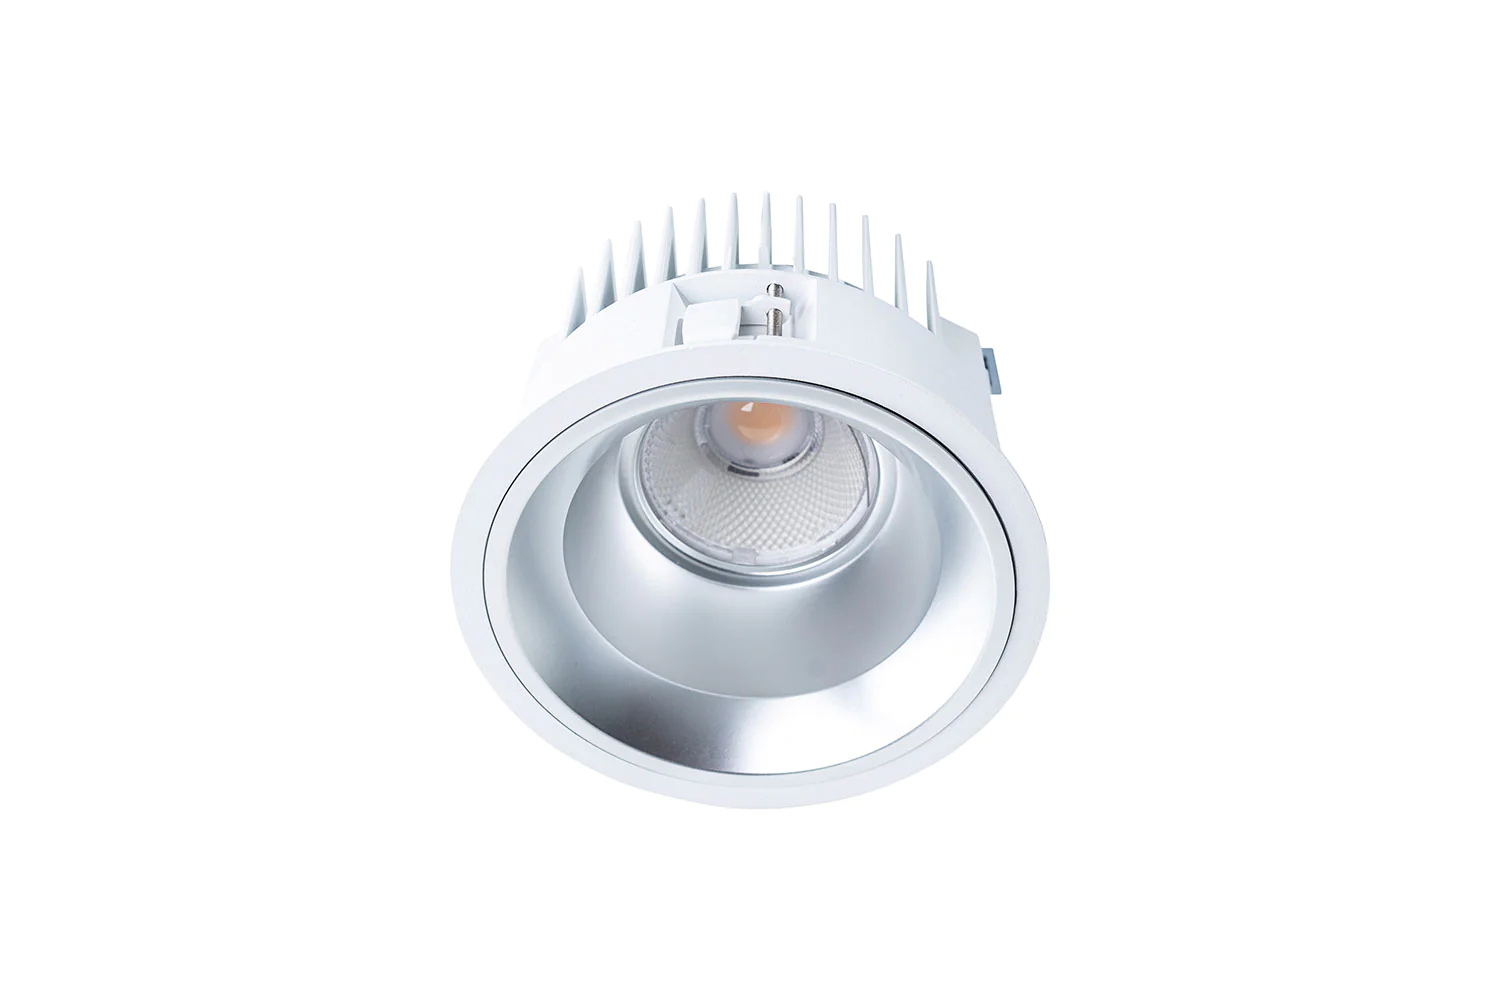 Produktleuchtenbild der Unio 615 LED Einbau-Downlight